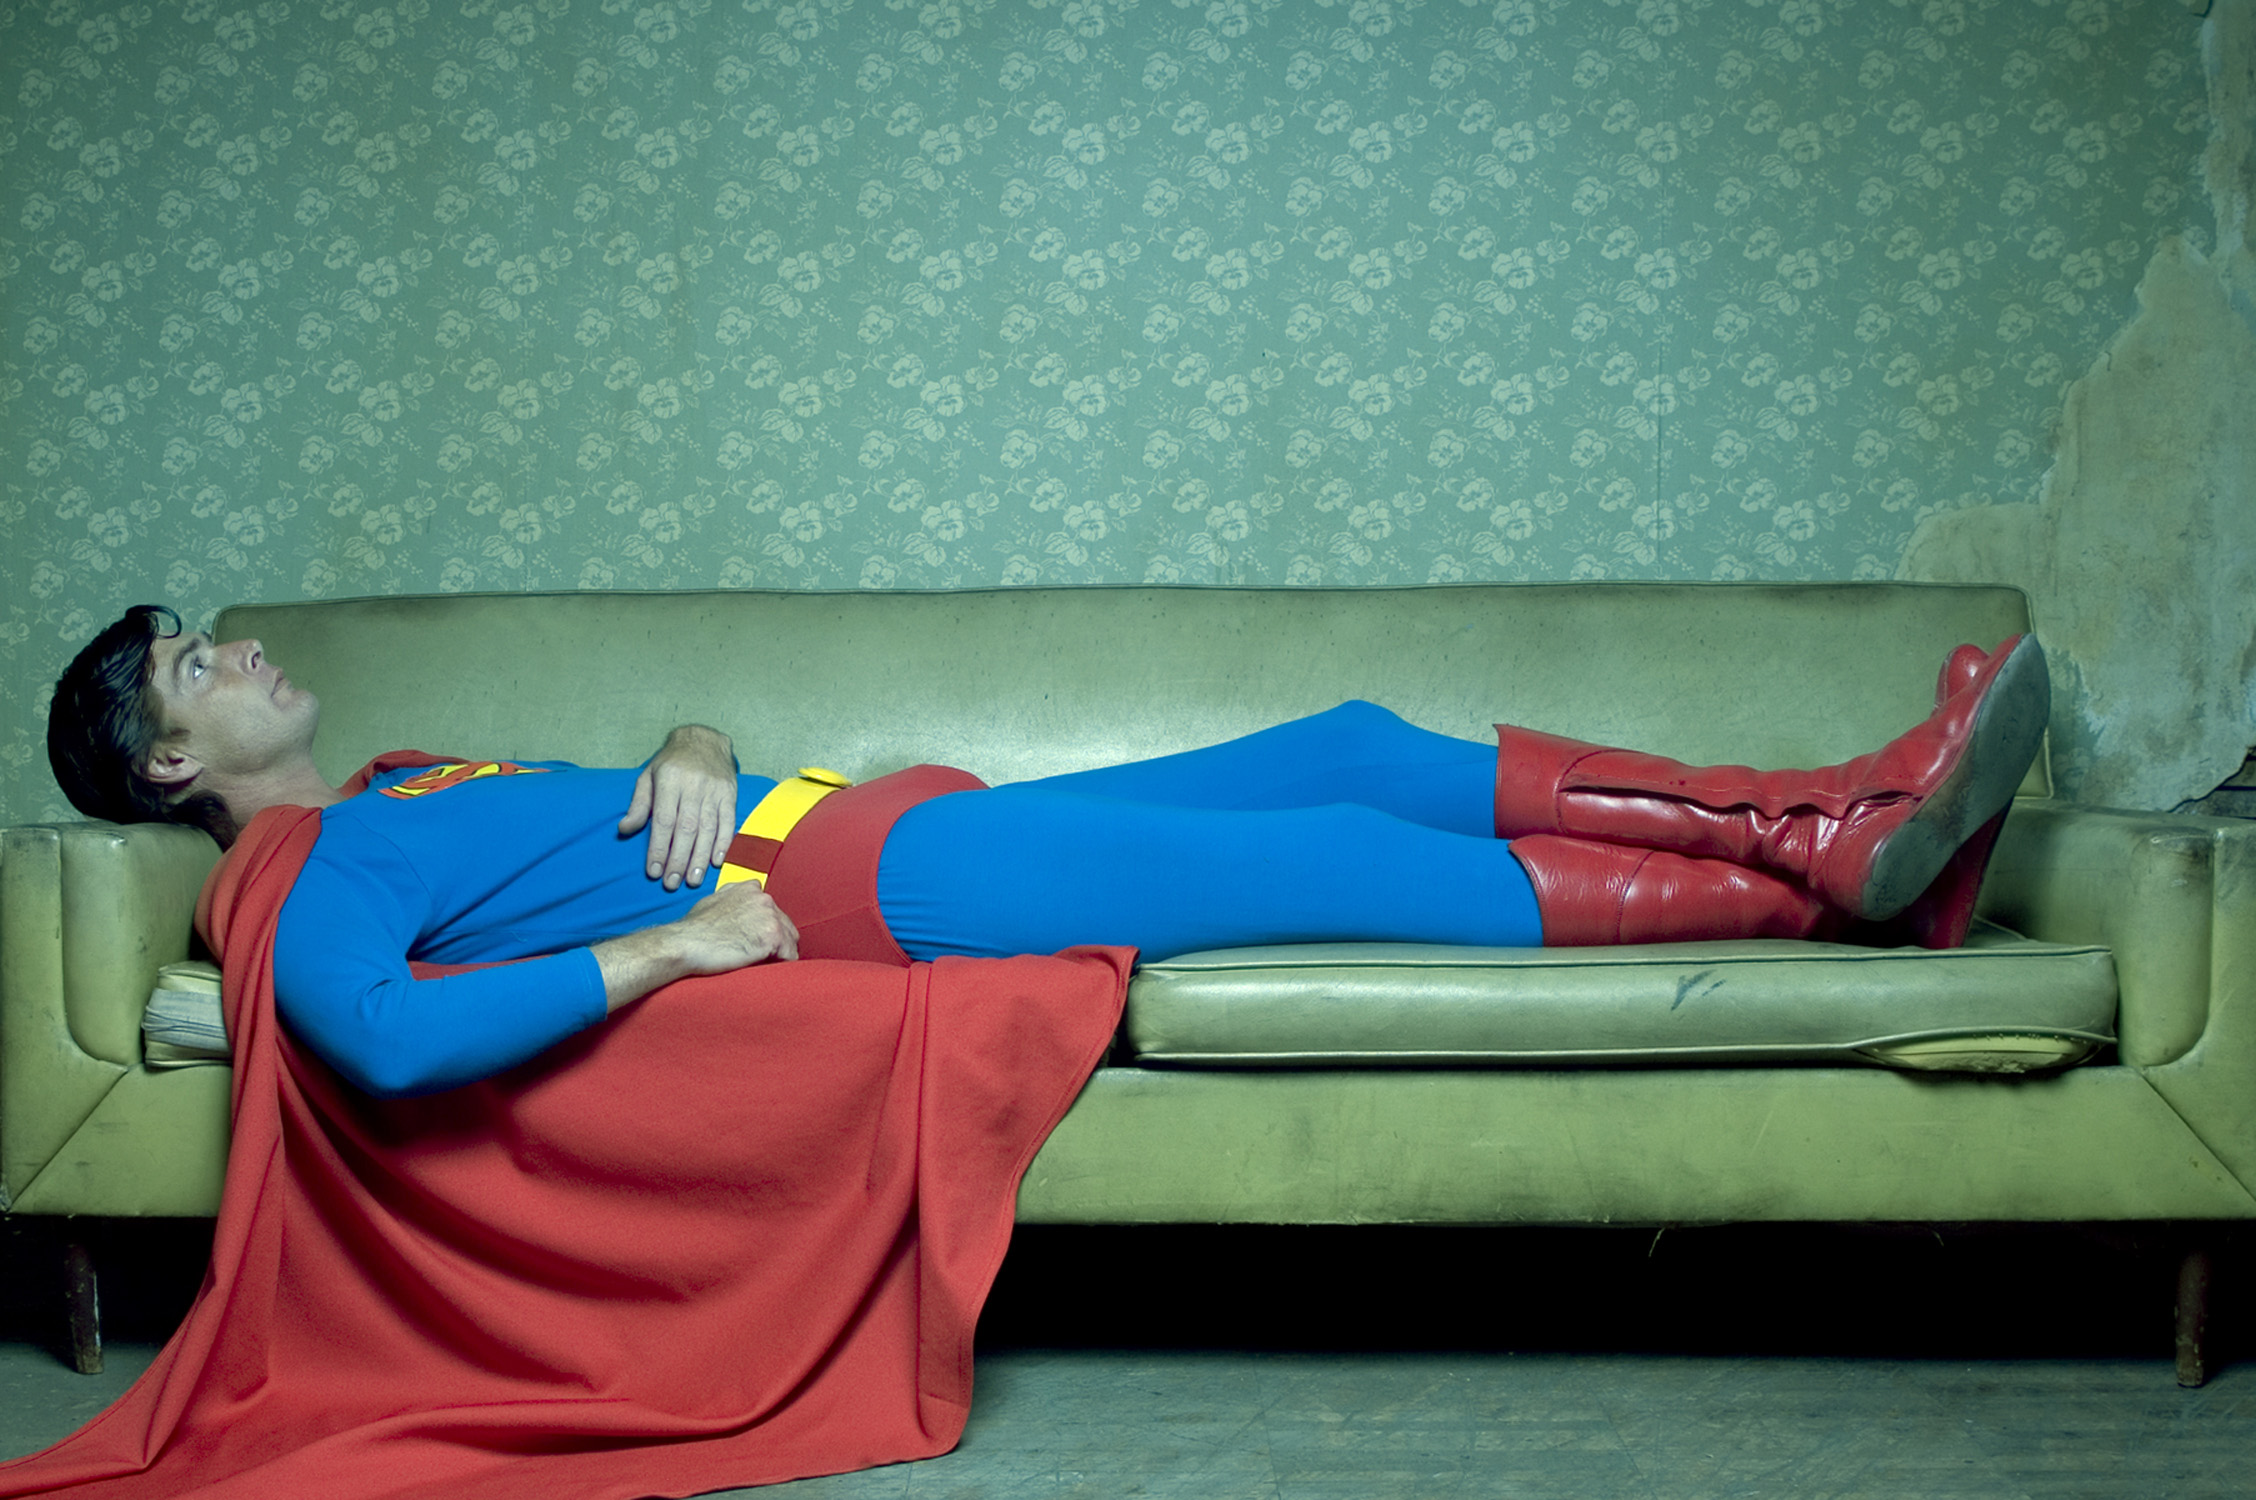 Am super heroes. Супермен на диване. Супергерой. Лежит на диване. Человек лежит на диване.